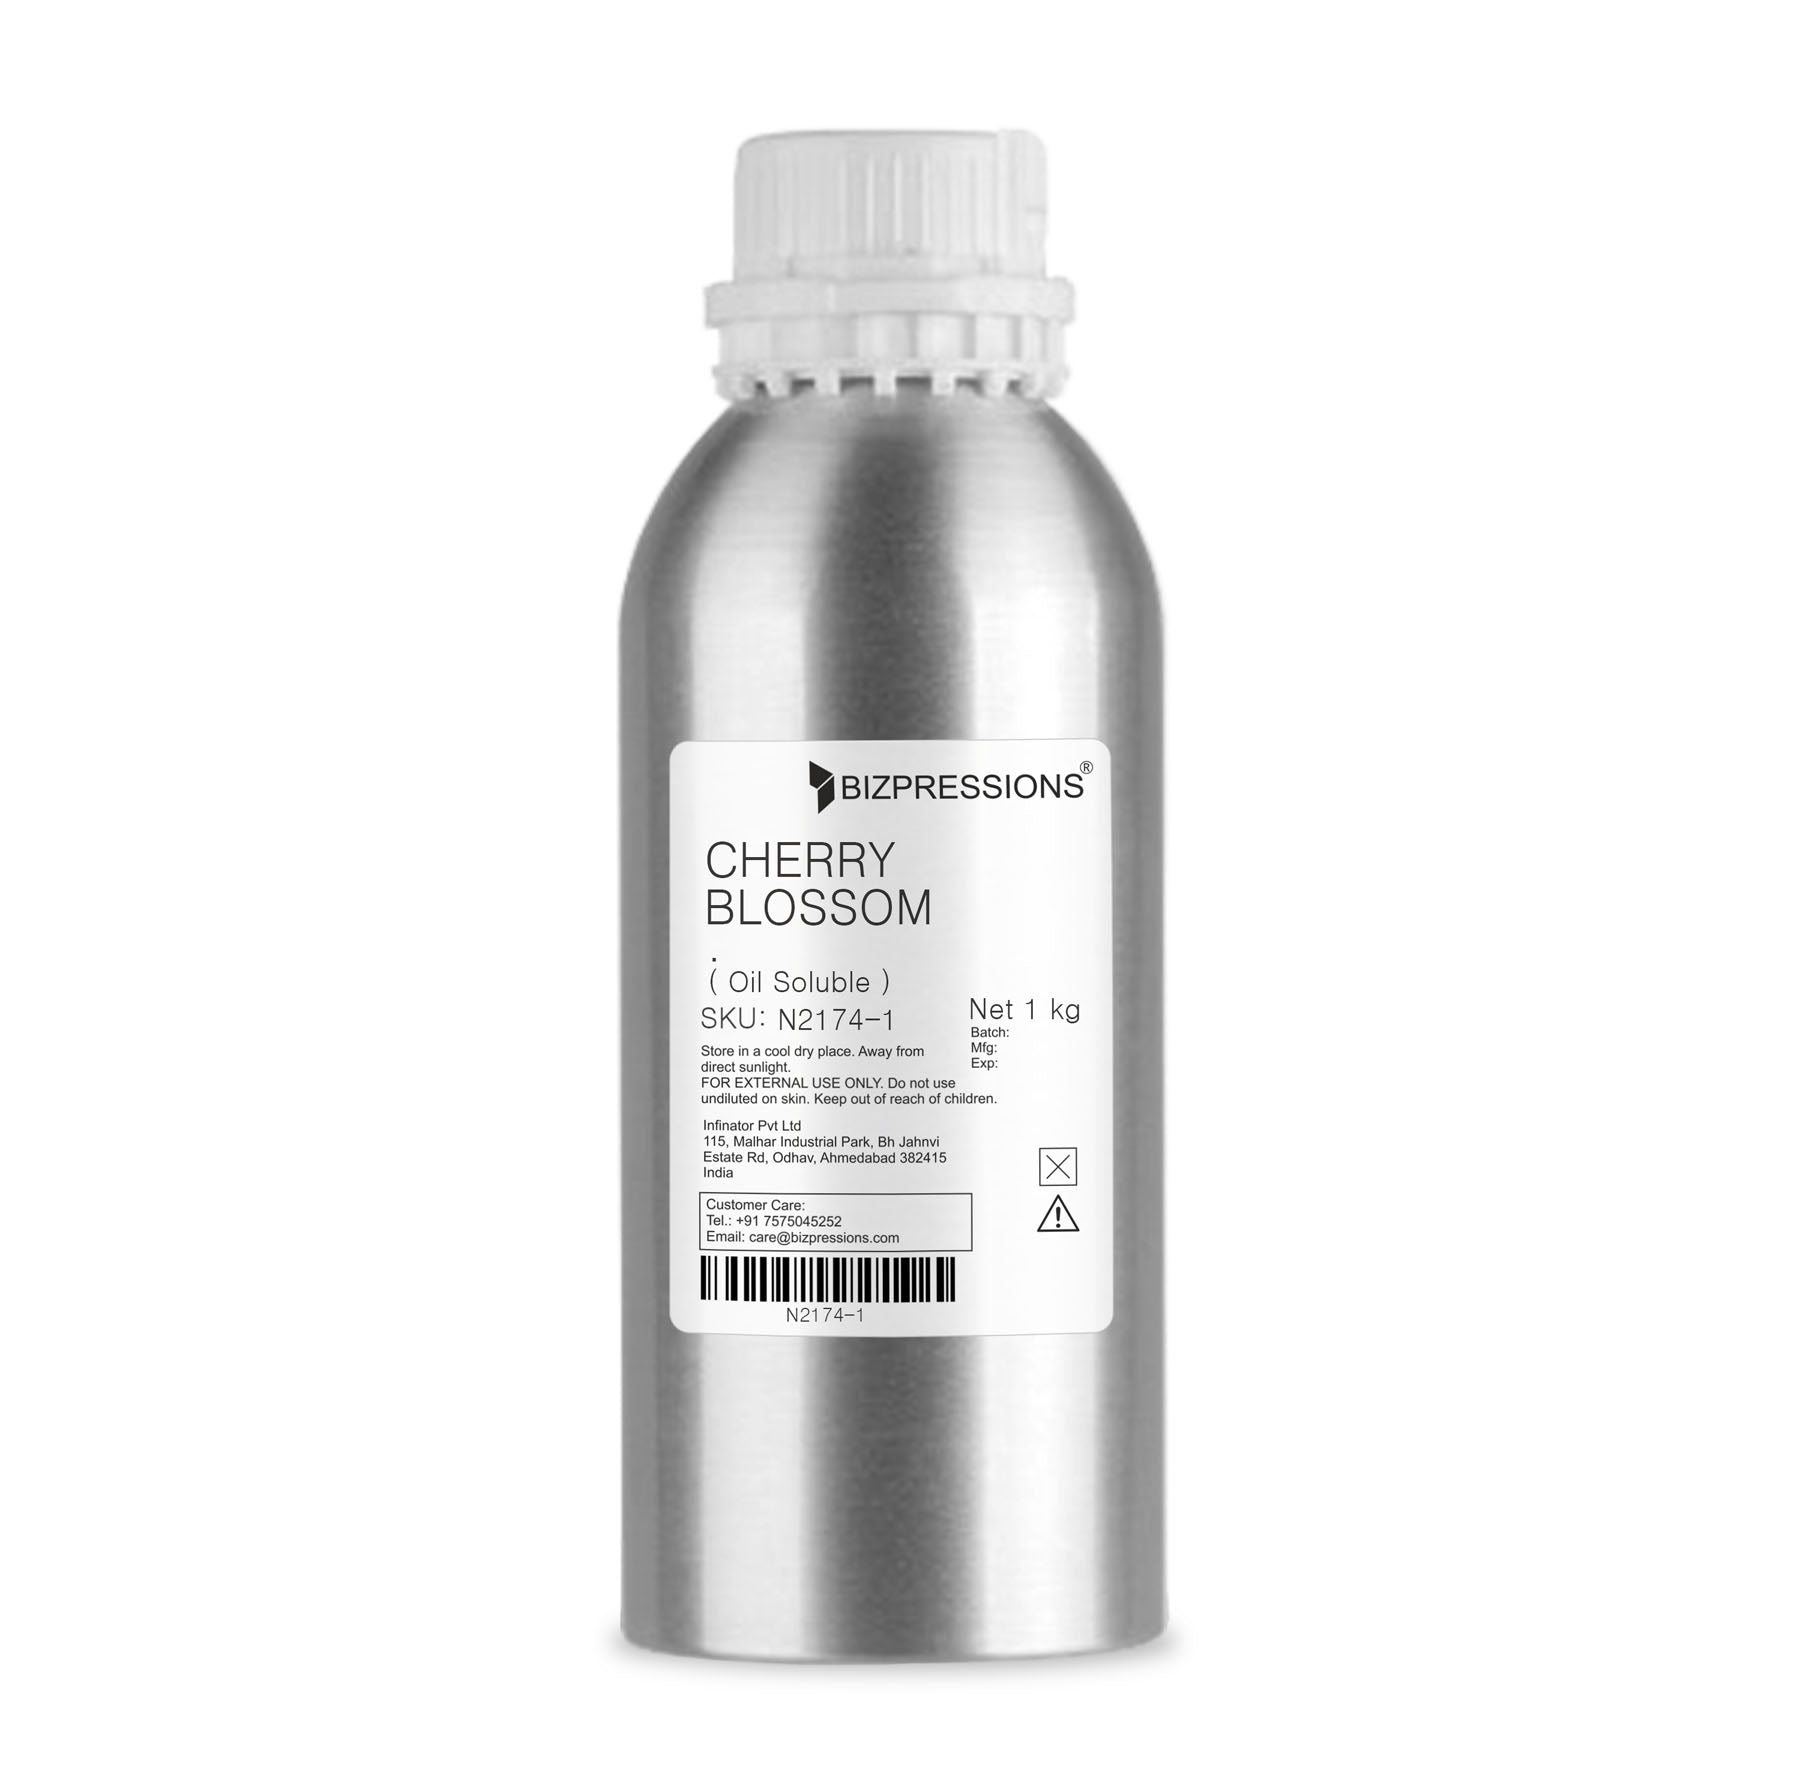 CHERRY BLOSSOM - Fragrance ( Oil Soluble ) - 1 kg